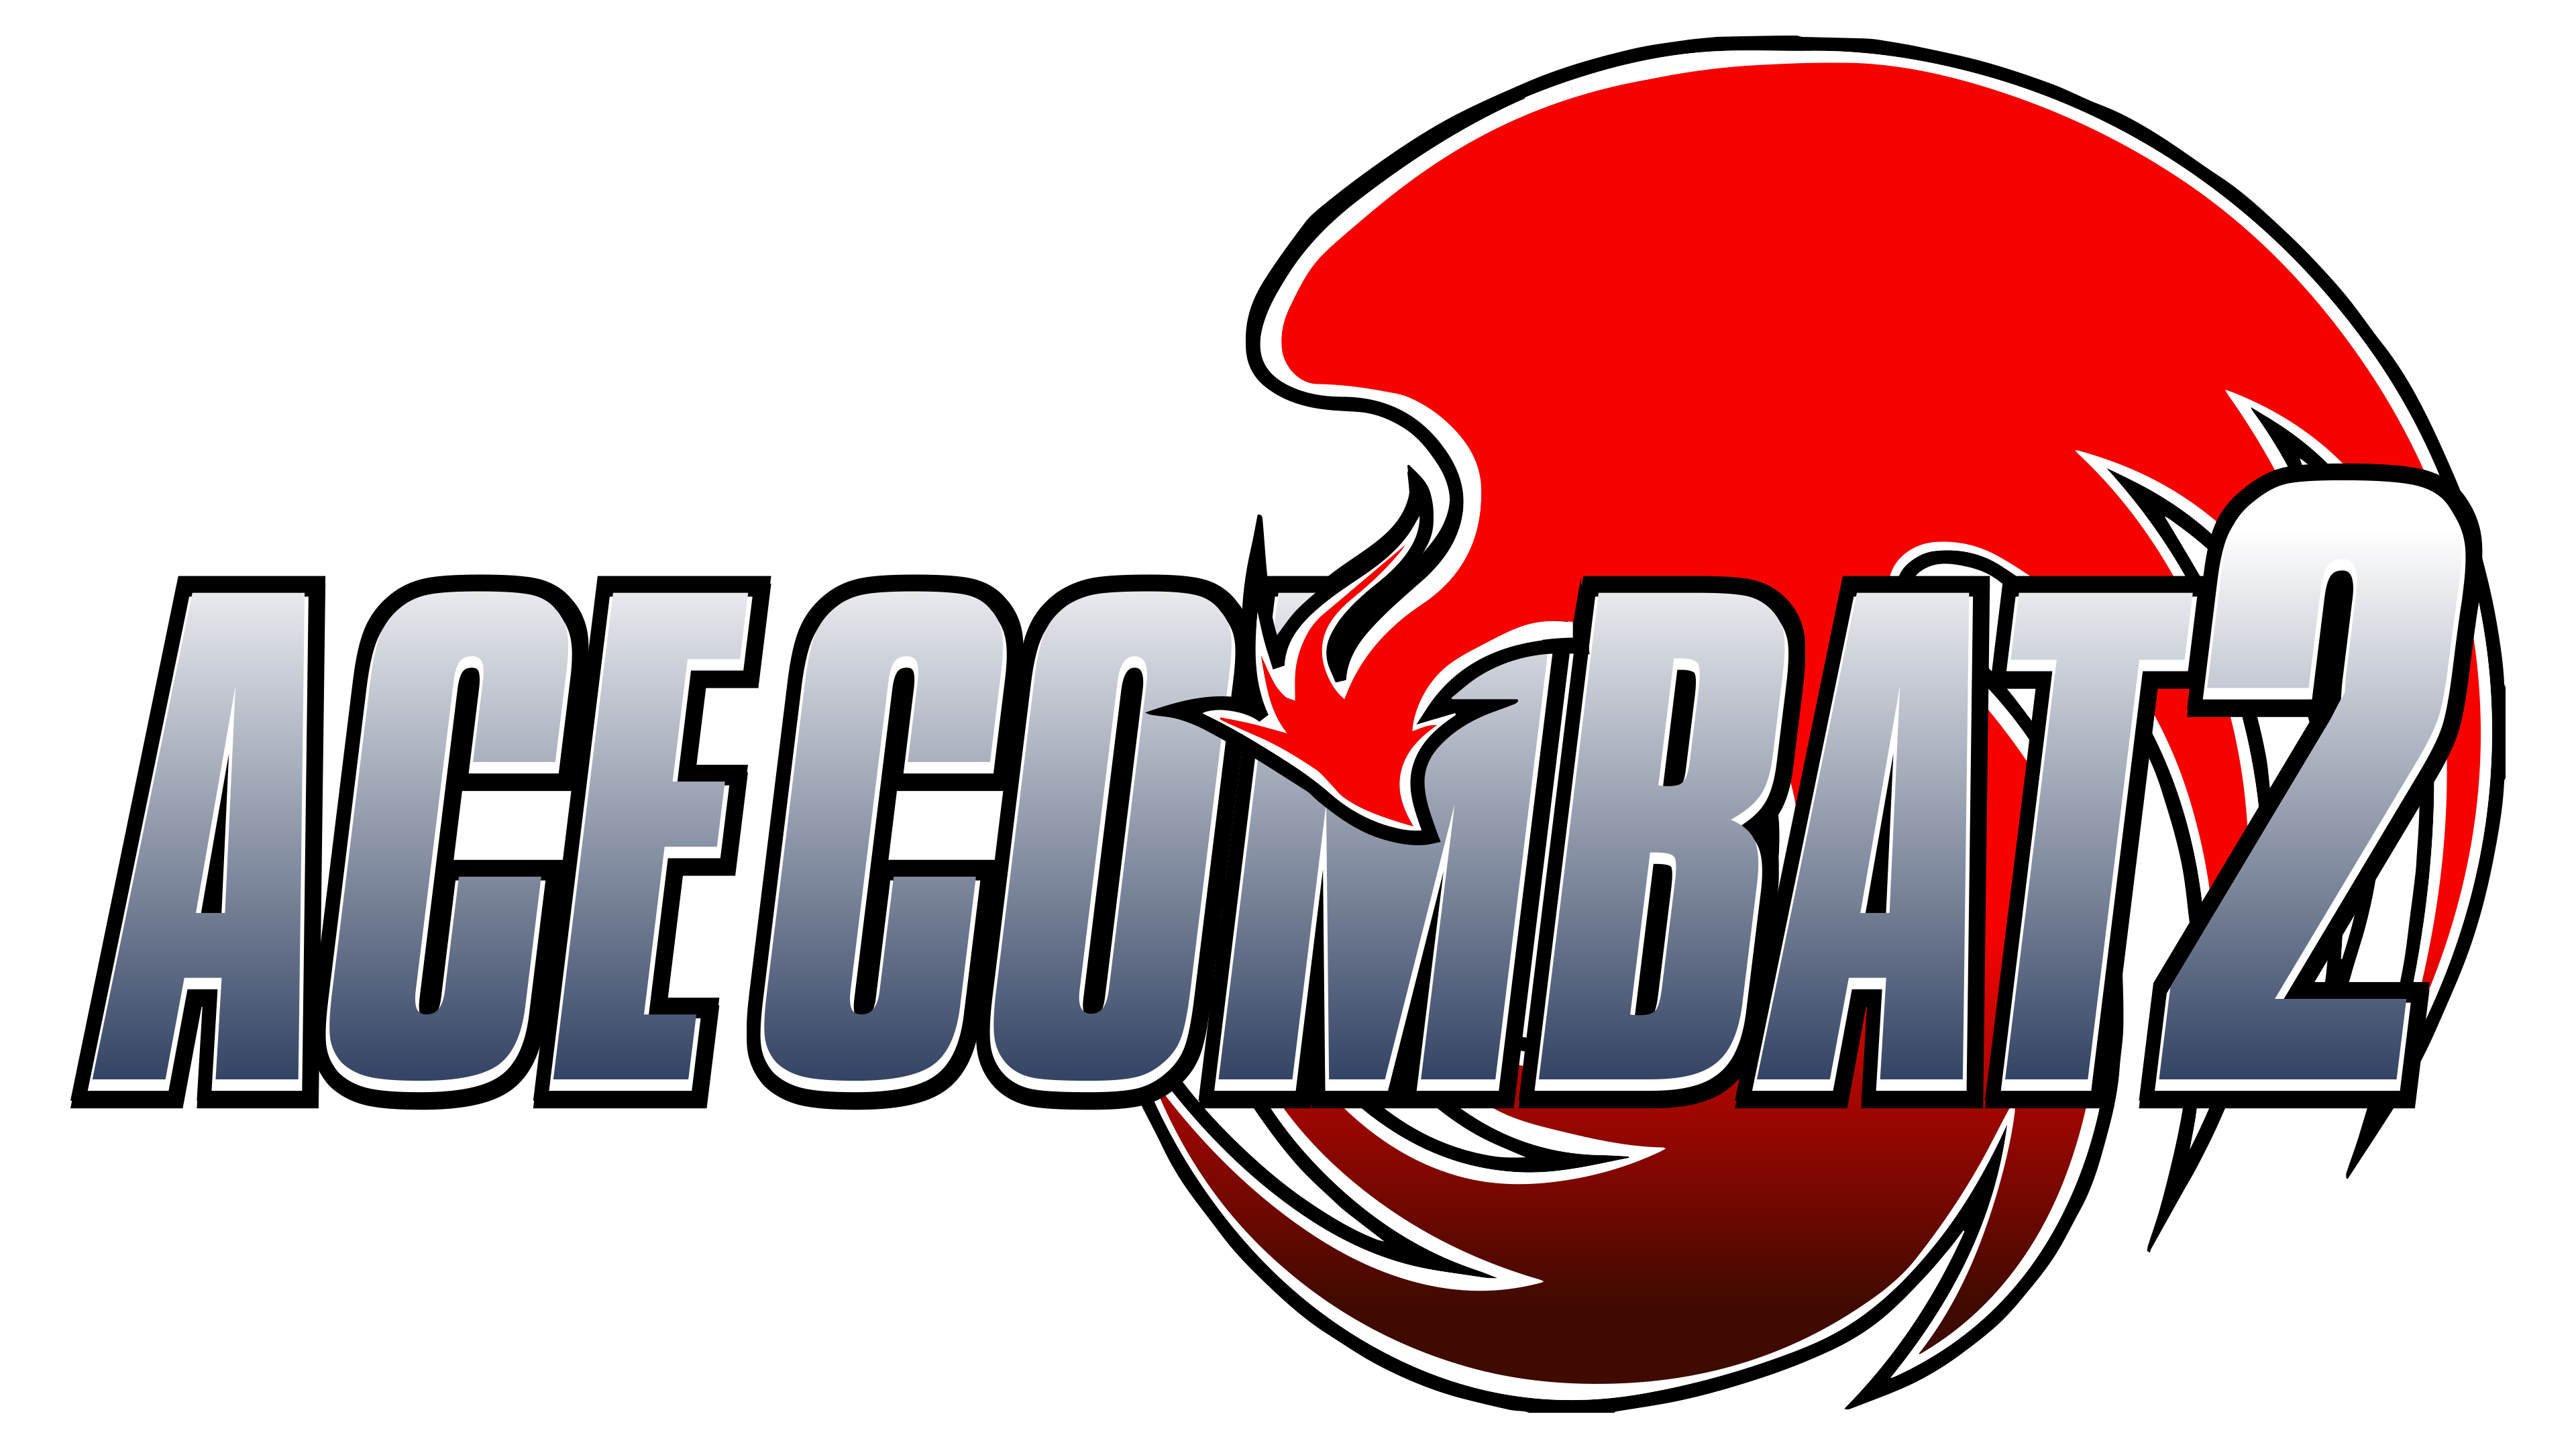 Ace Combat 2. Ace Combat 2 русская версия. Ace Combat logo. Ace Combat 2 logo. Combat ii